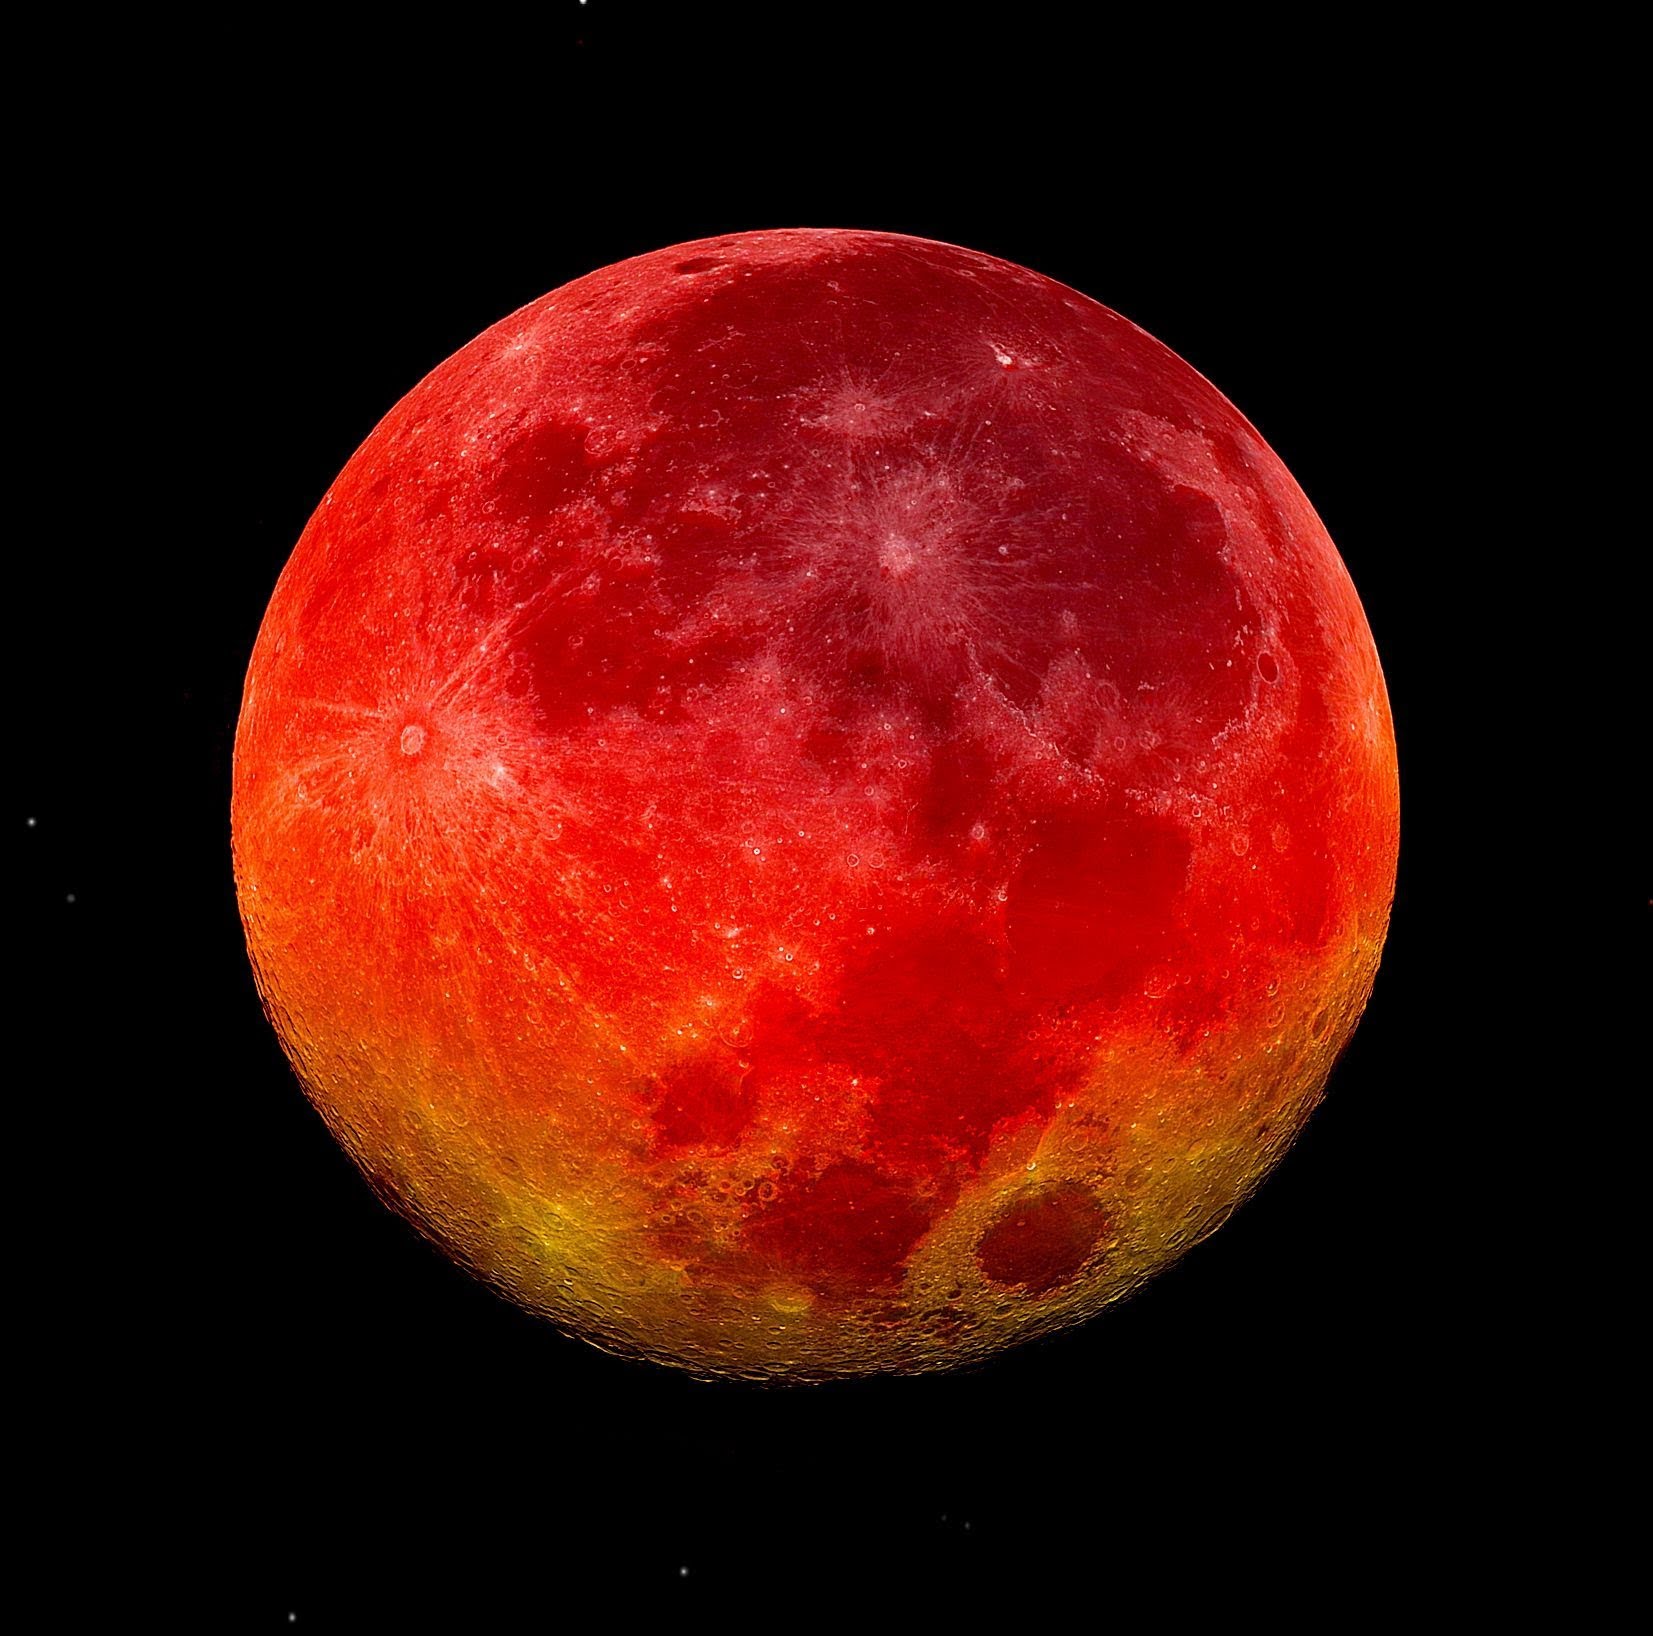 31 Ocak tarihine dikkat! ’Kanlı Ay’ , ’Mavi Ay’ ve ’Süper Ay’...